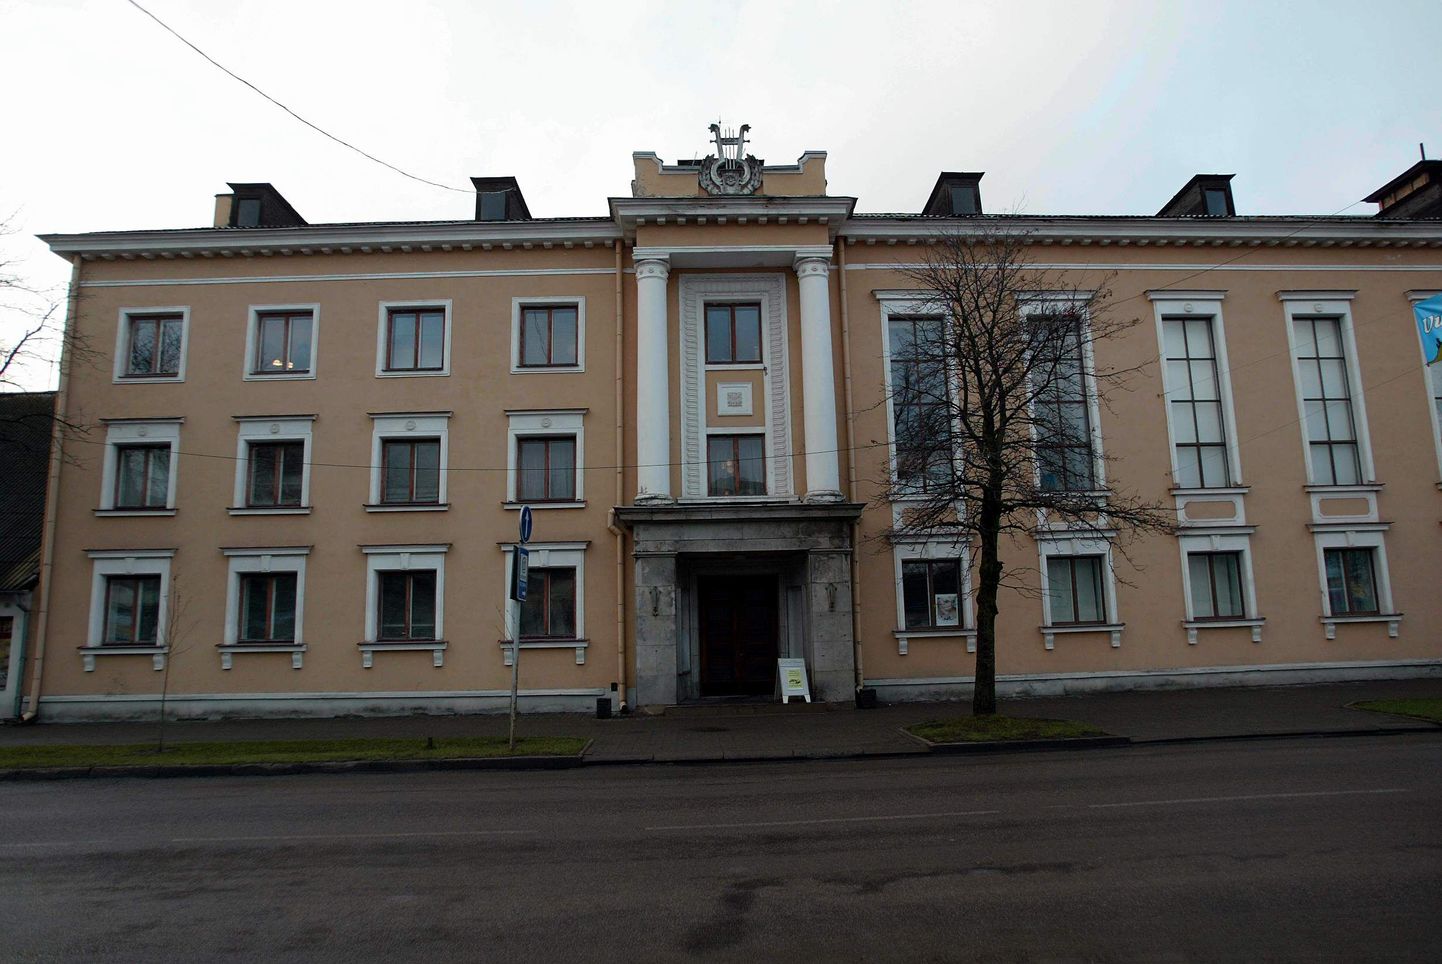 Täna on Viljandi kultuurimajas tasuta kevadkontserdi «Kooliranitsa lood».